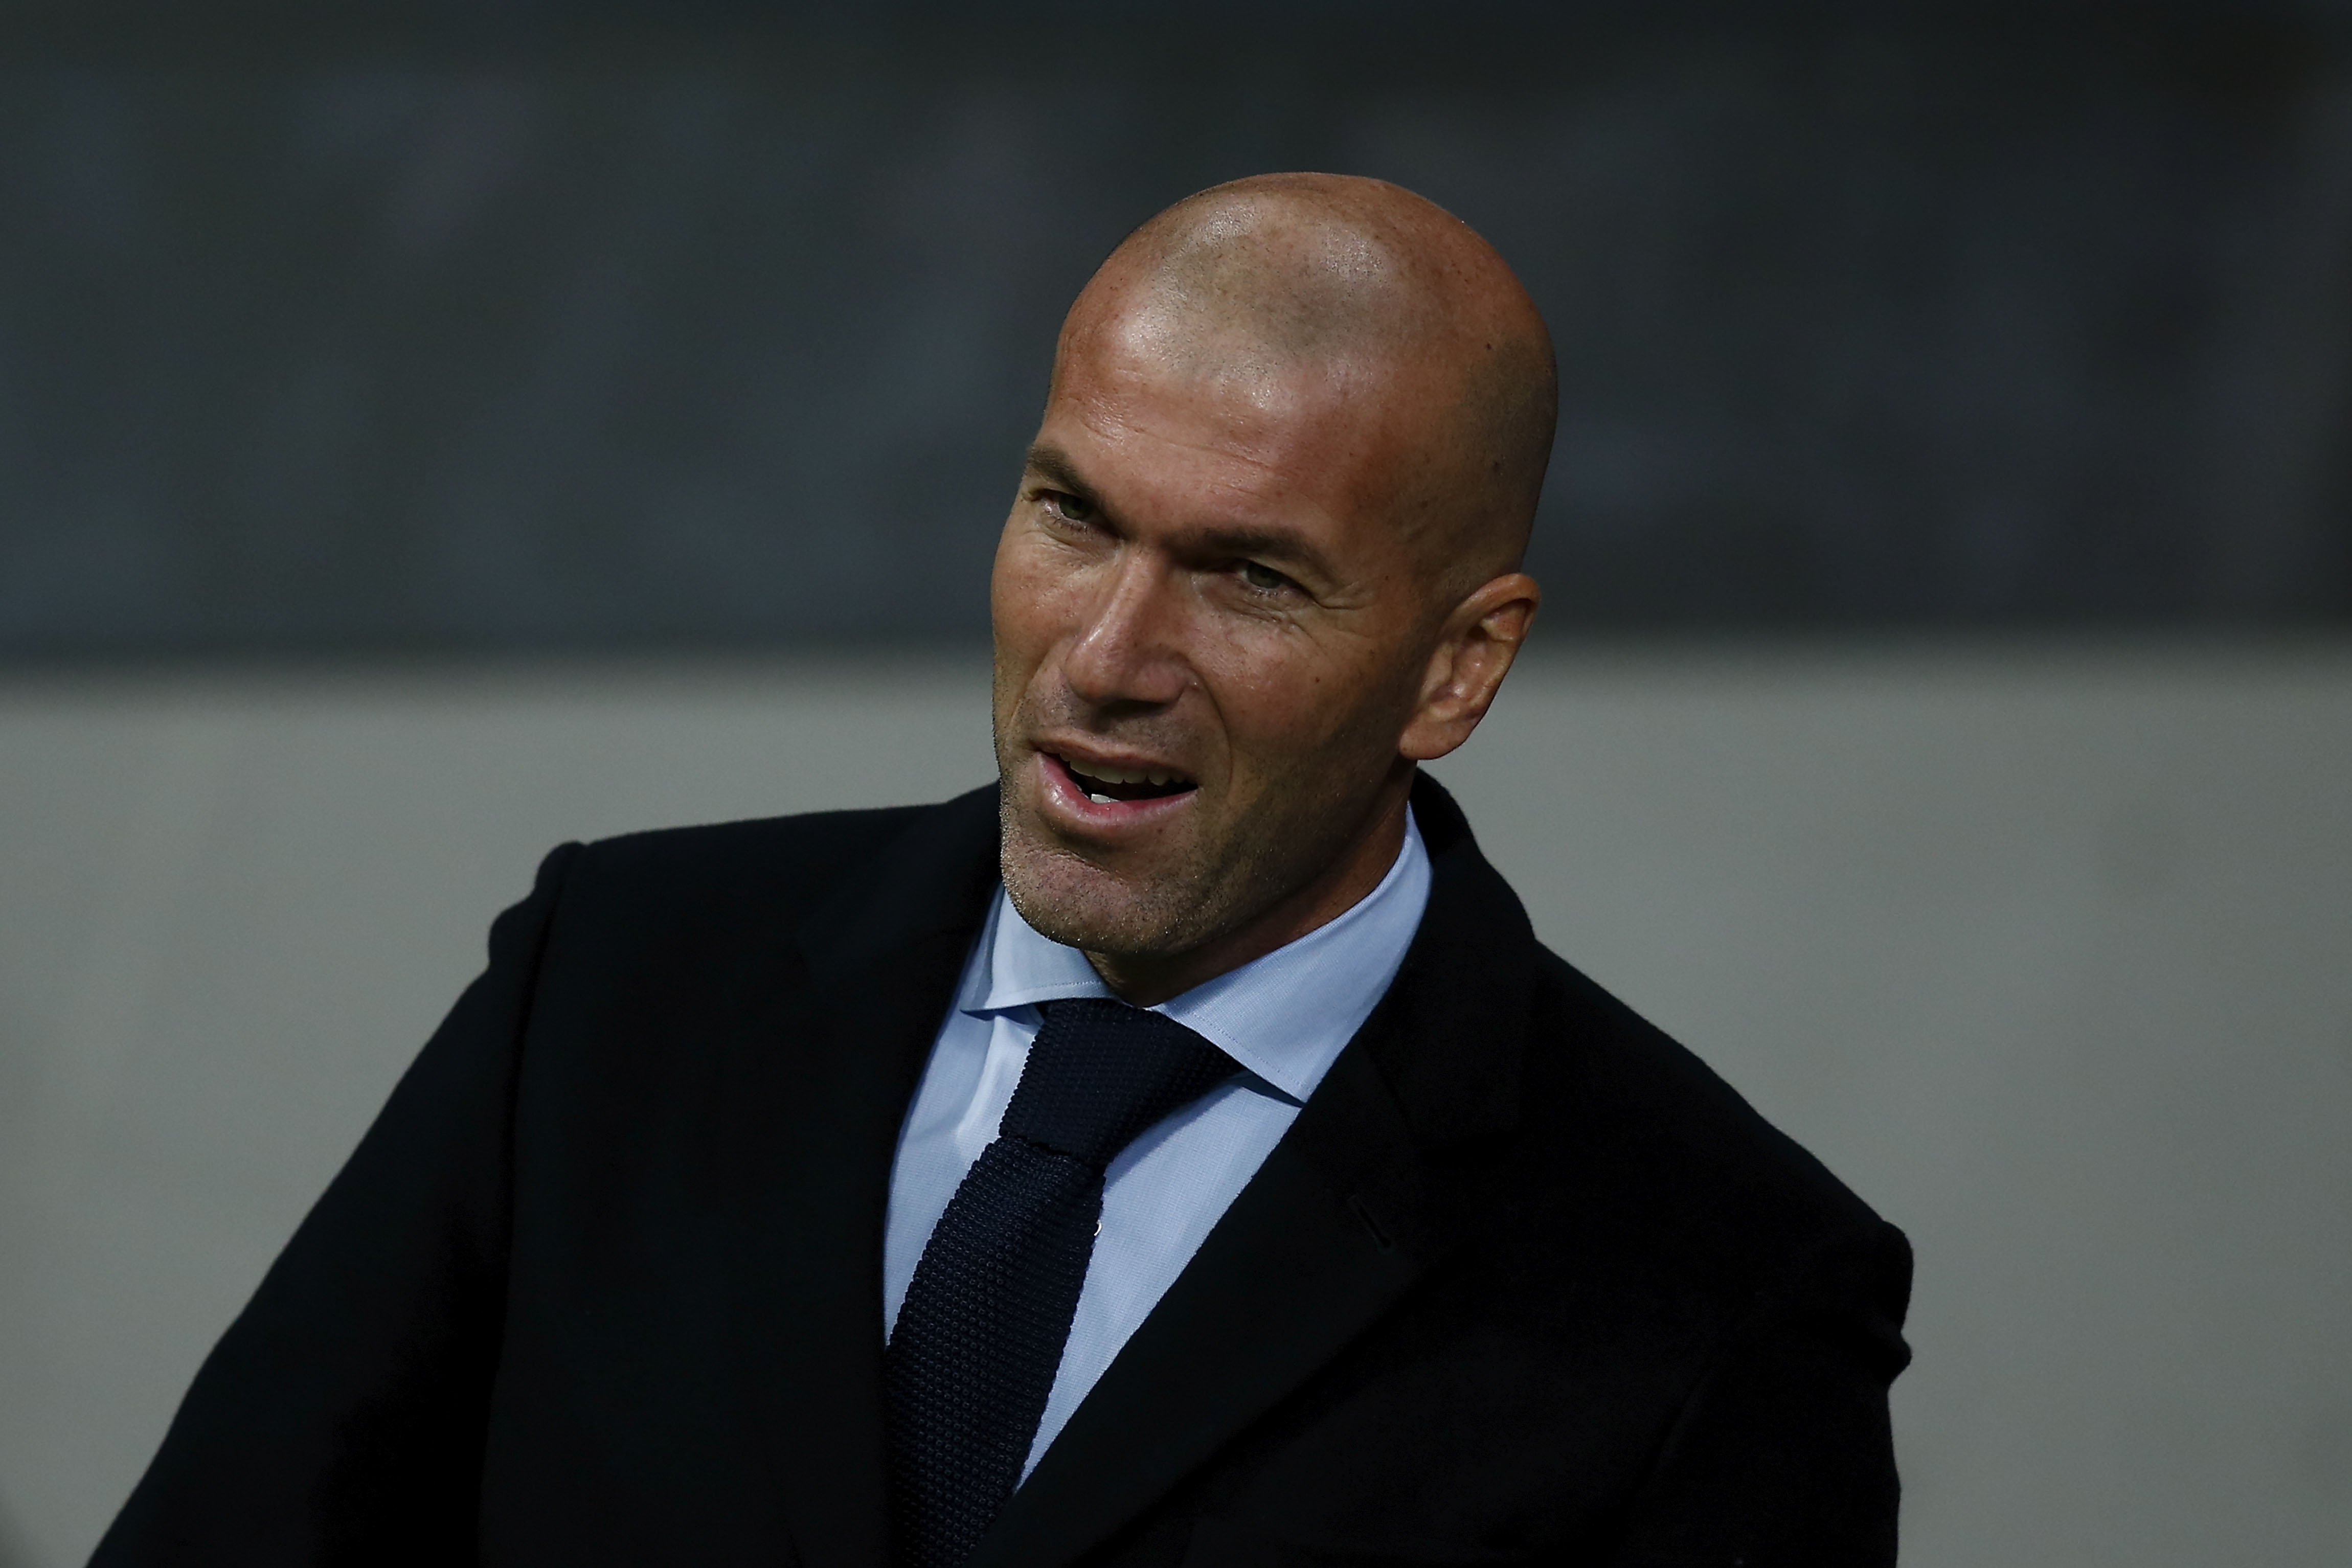 Треньорът на Реал Мадрид Зинедин Зидан демонстрира спокойствие, независимо от